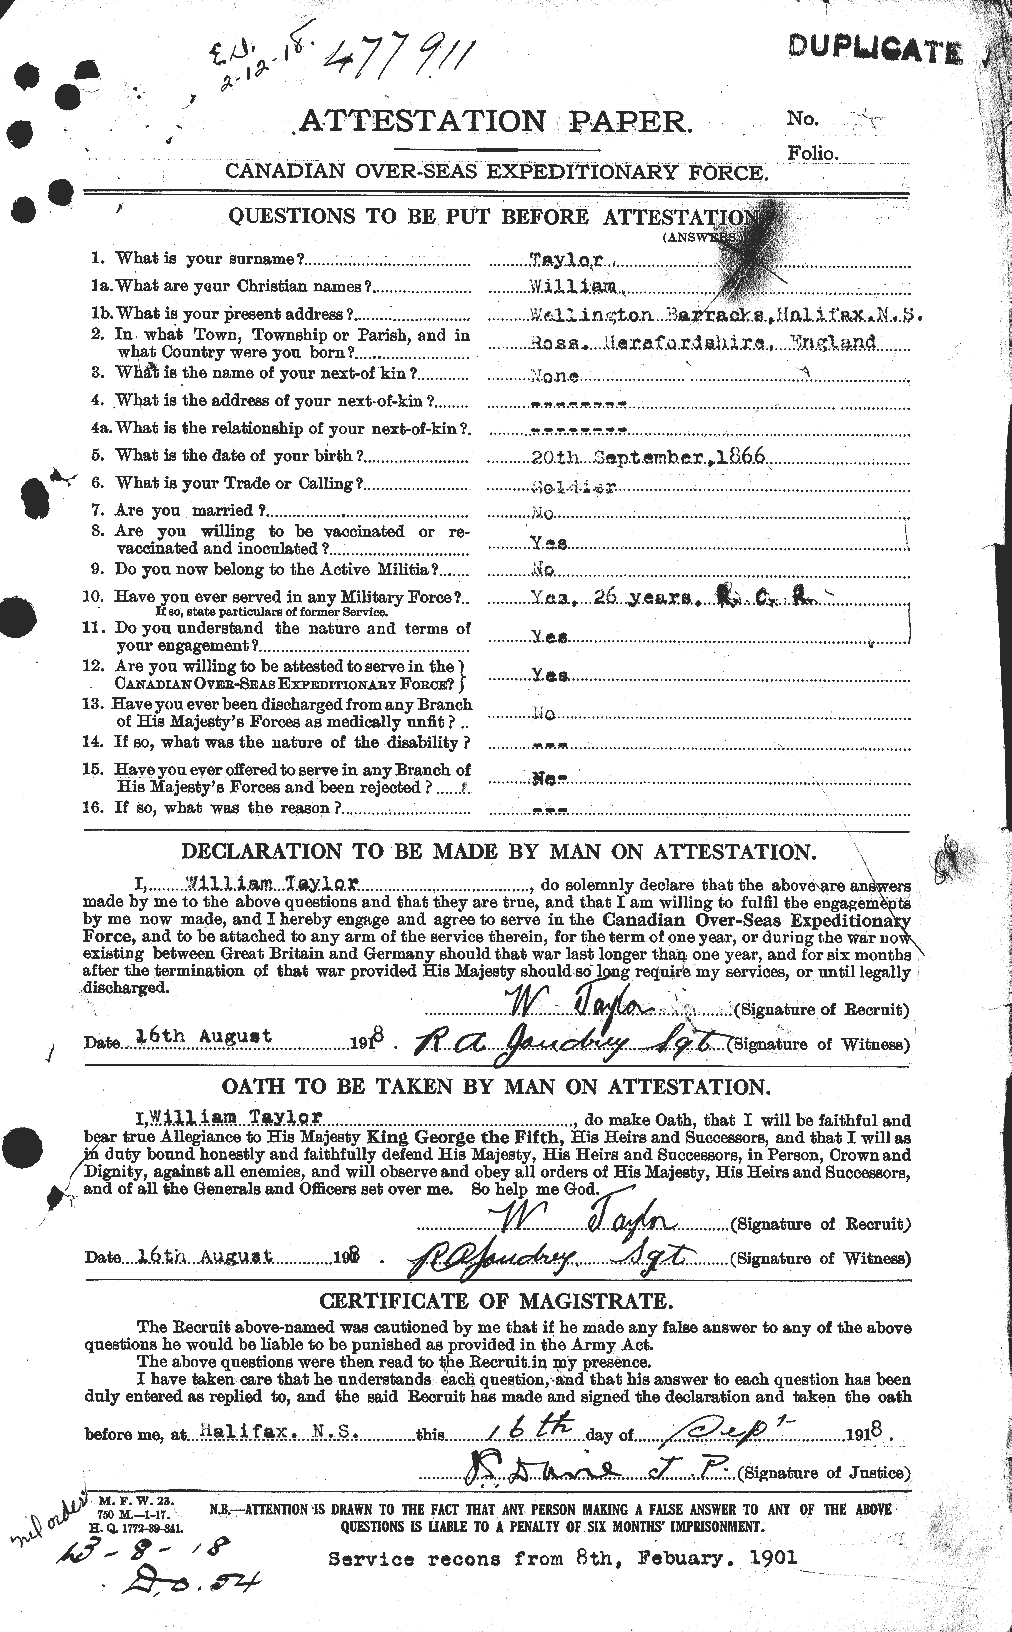 Dossiers du Personnel de la Première Guerre mondiale - CEC 628125a